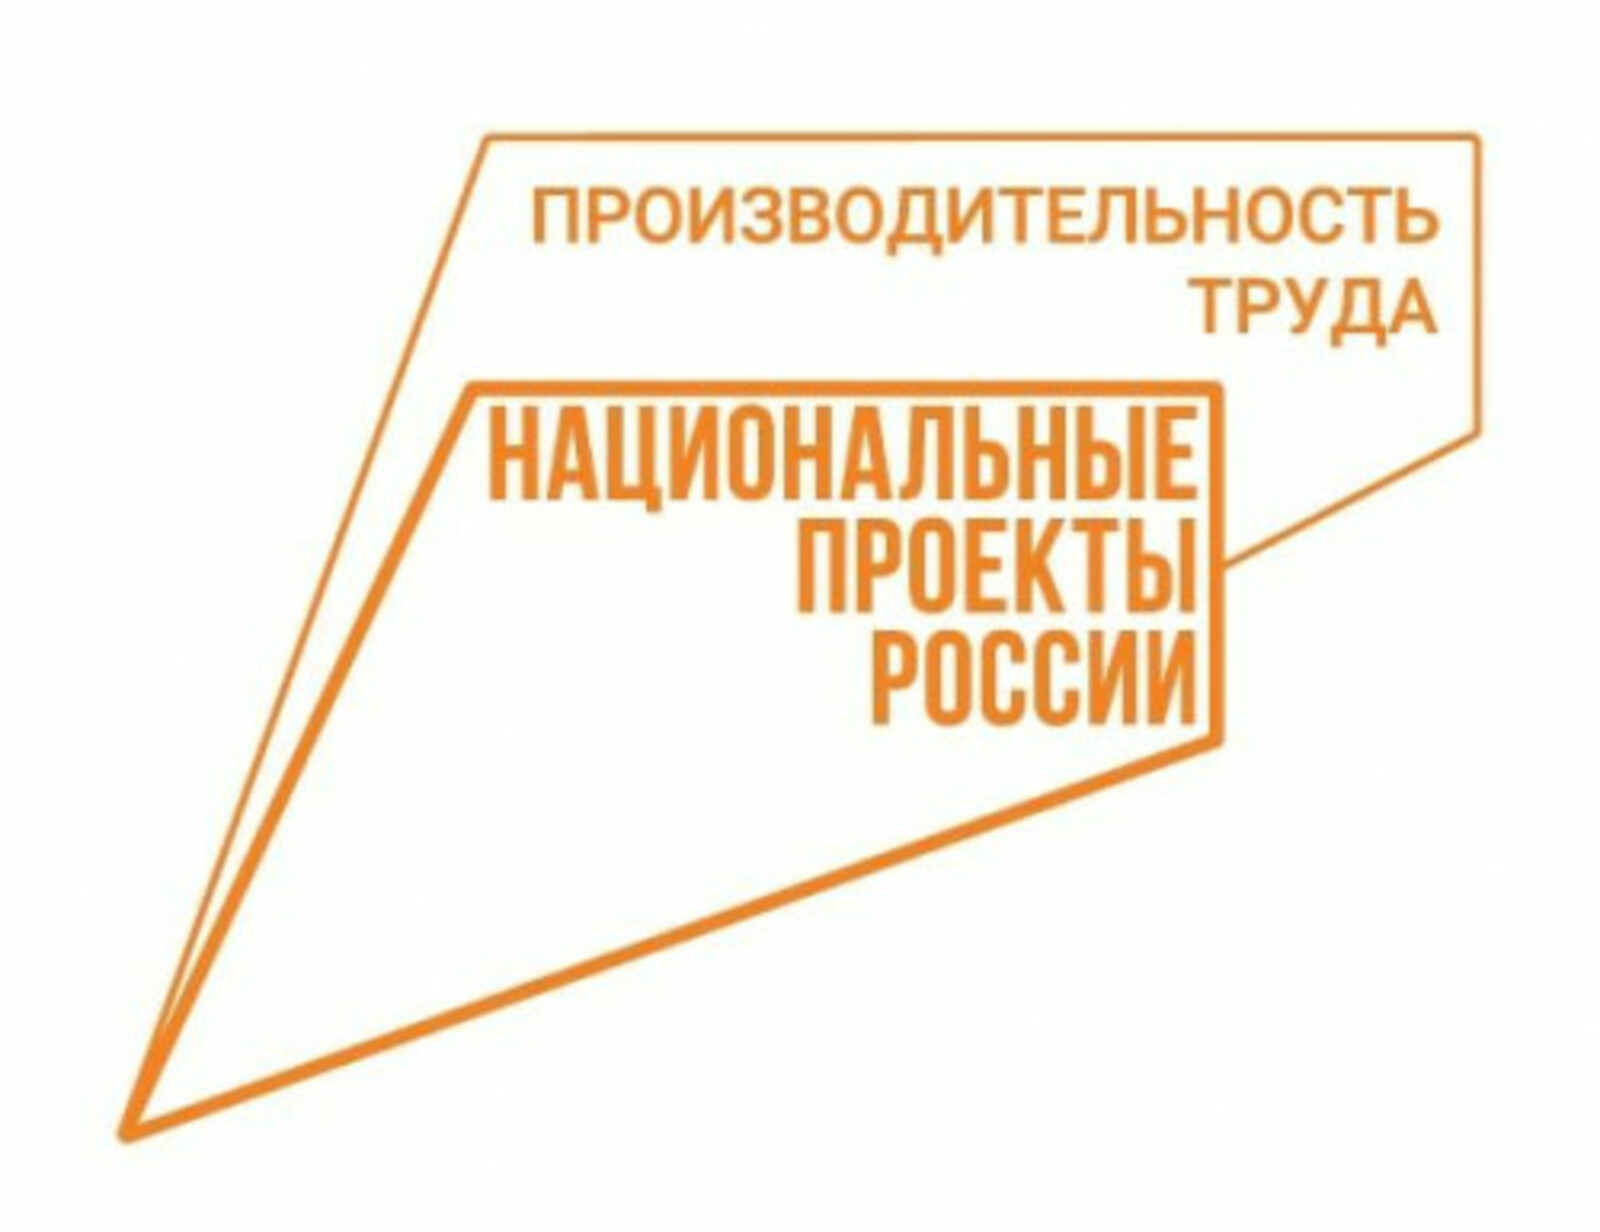 В Башкирии 142 предприятия стали участниками нацпроекта «Производительность труда»